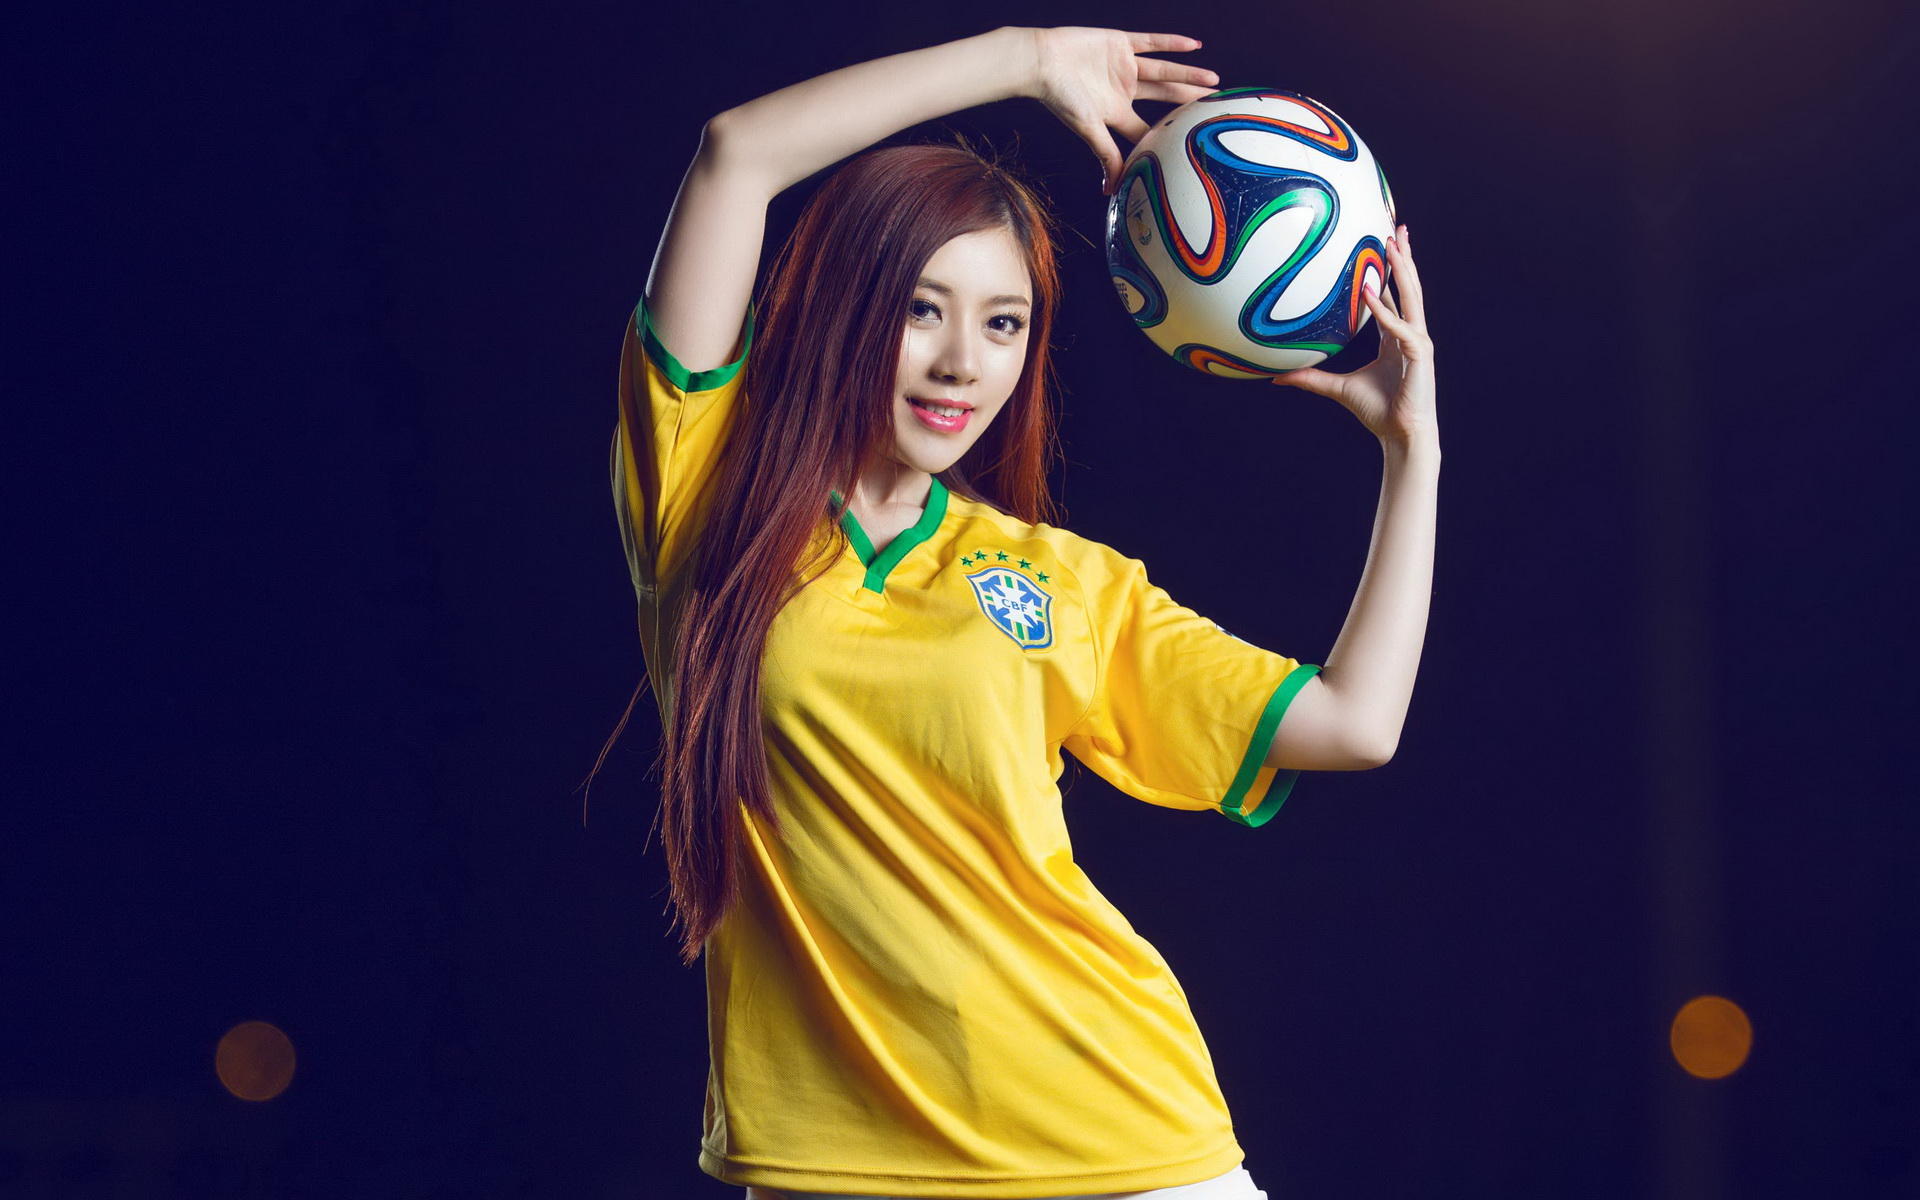 サッカー少女の壁紙,黄,プレーヤー,tシャツ,写真撮影,バレーボール選手